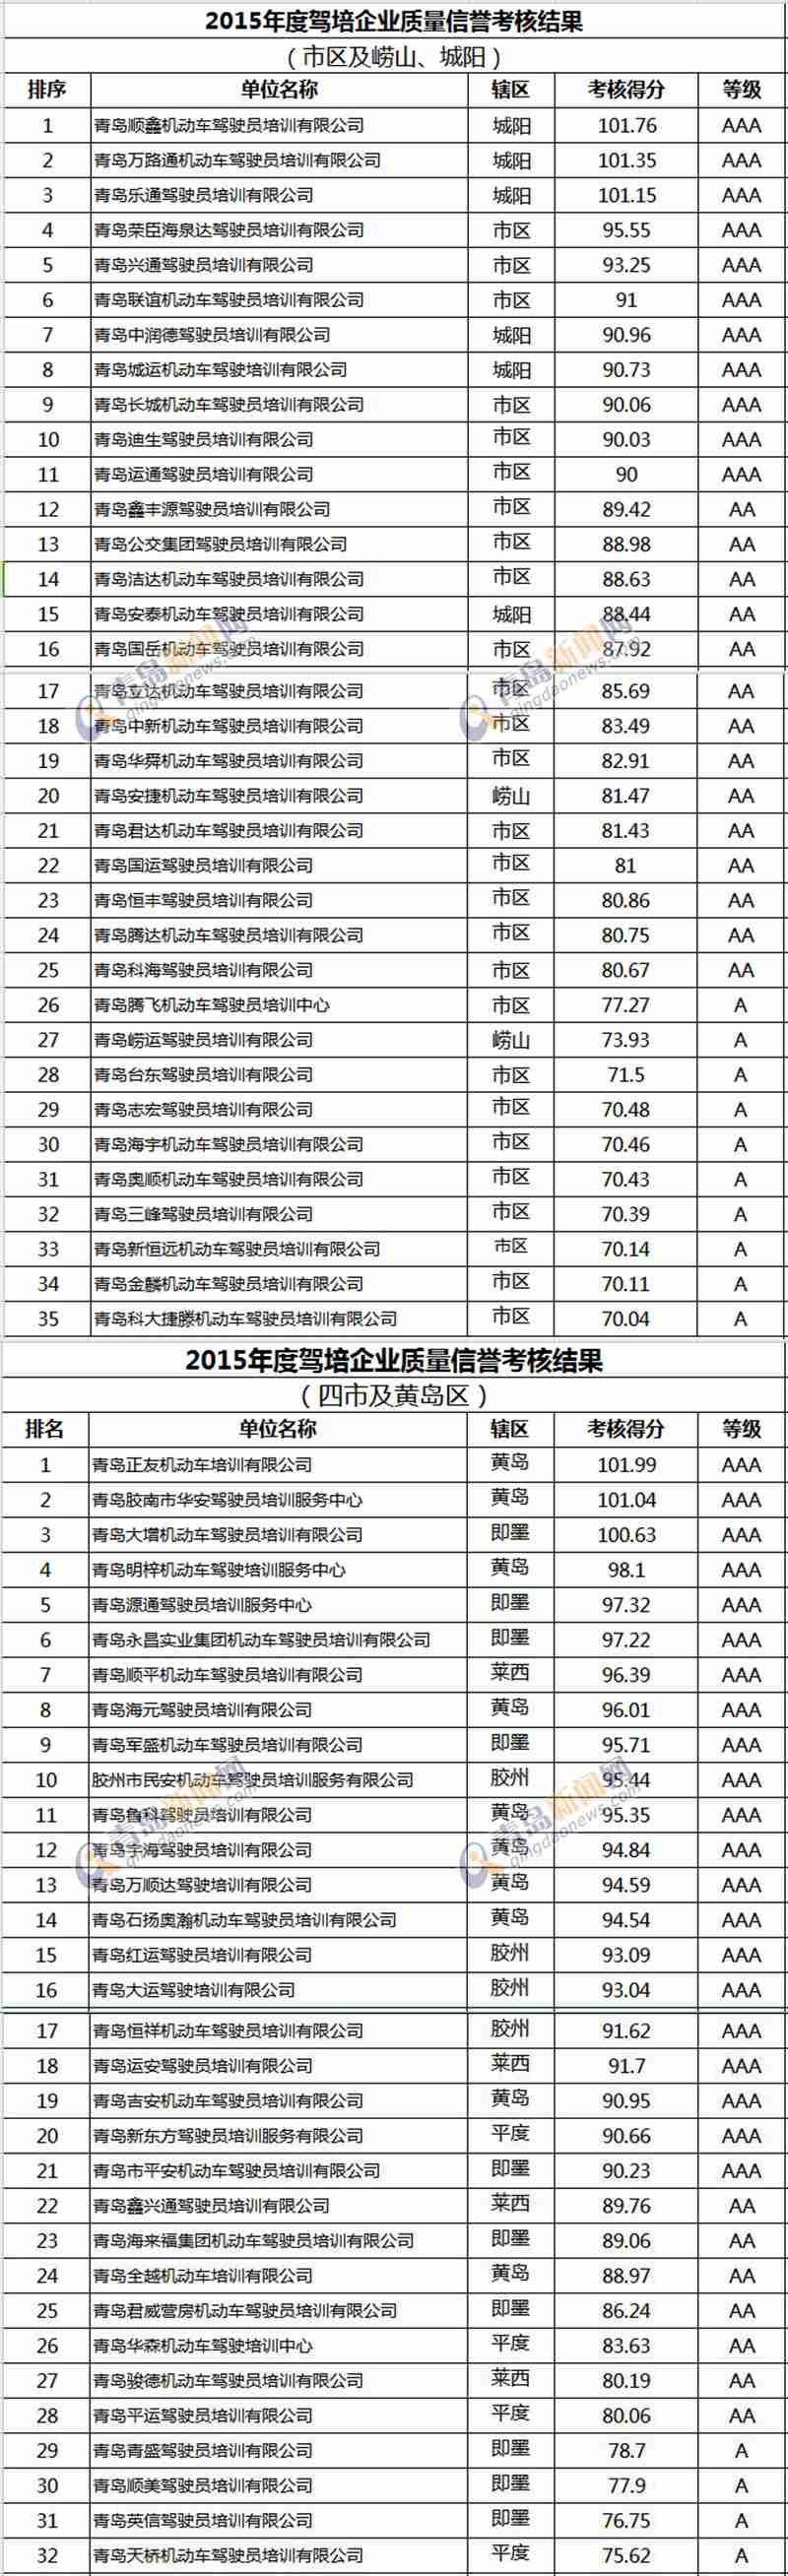 青岛公布2015年度驾校质量信誉排名(附名单)